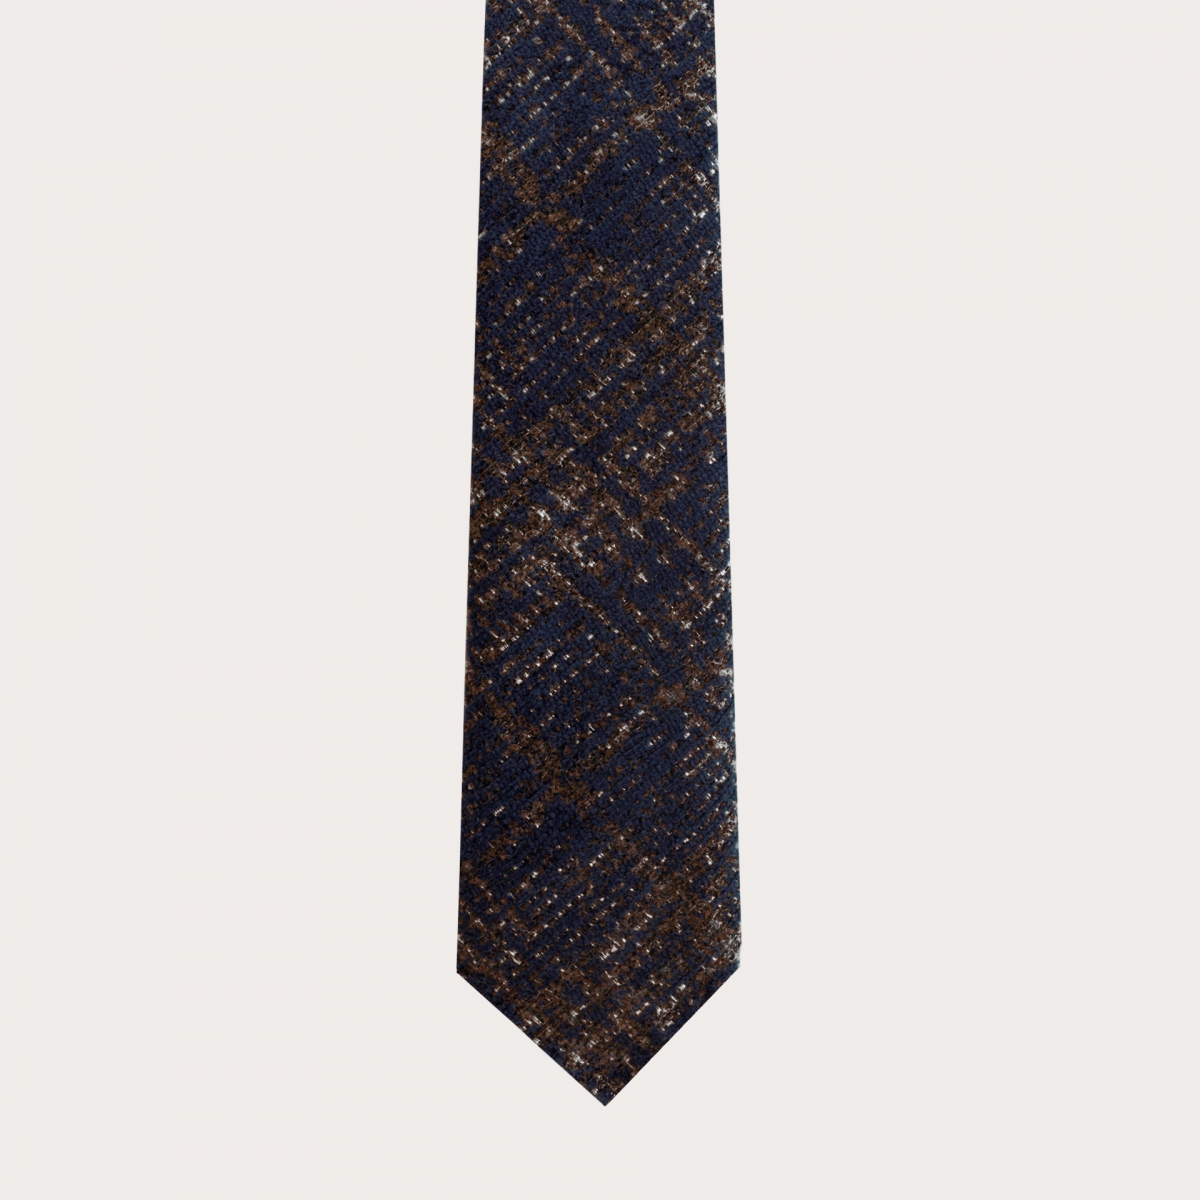 Ungefütterte Krawatte aus Wolle und Seide, blauem und braunem Tartan